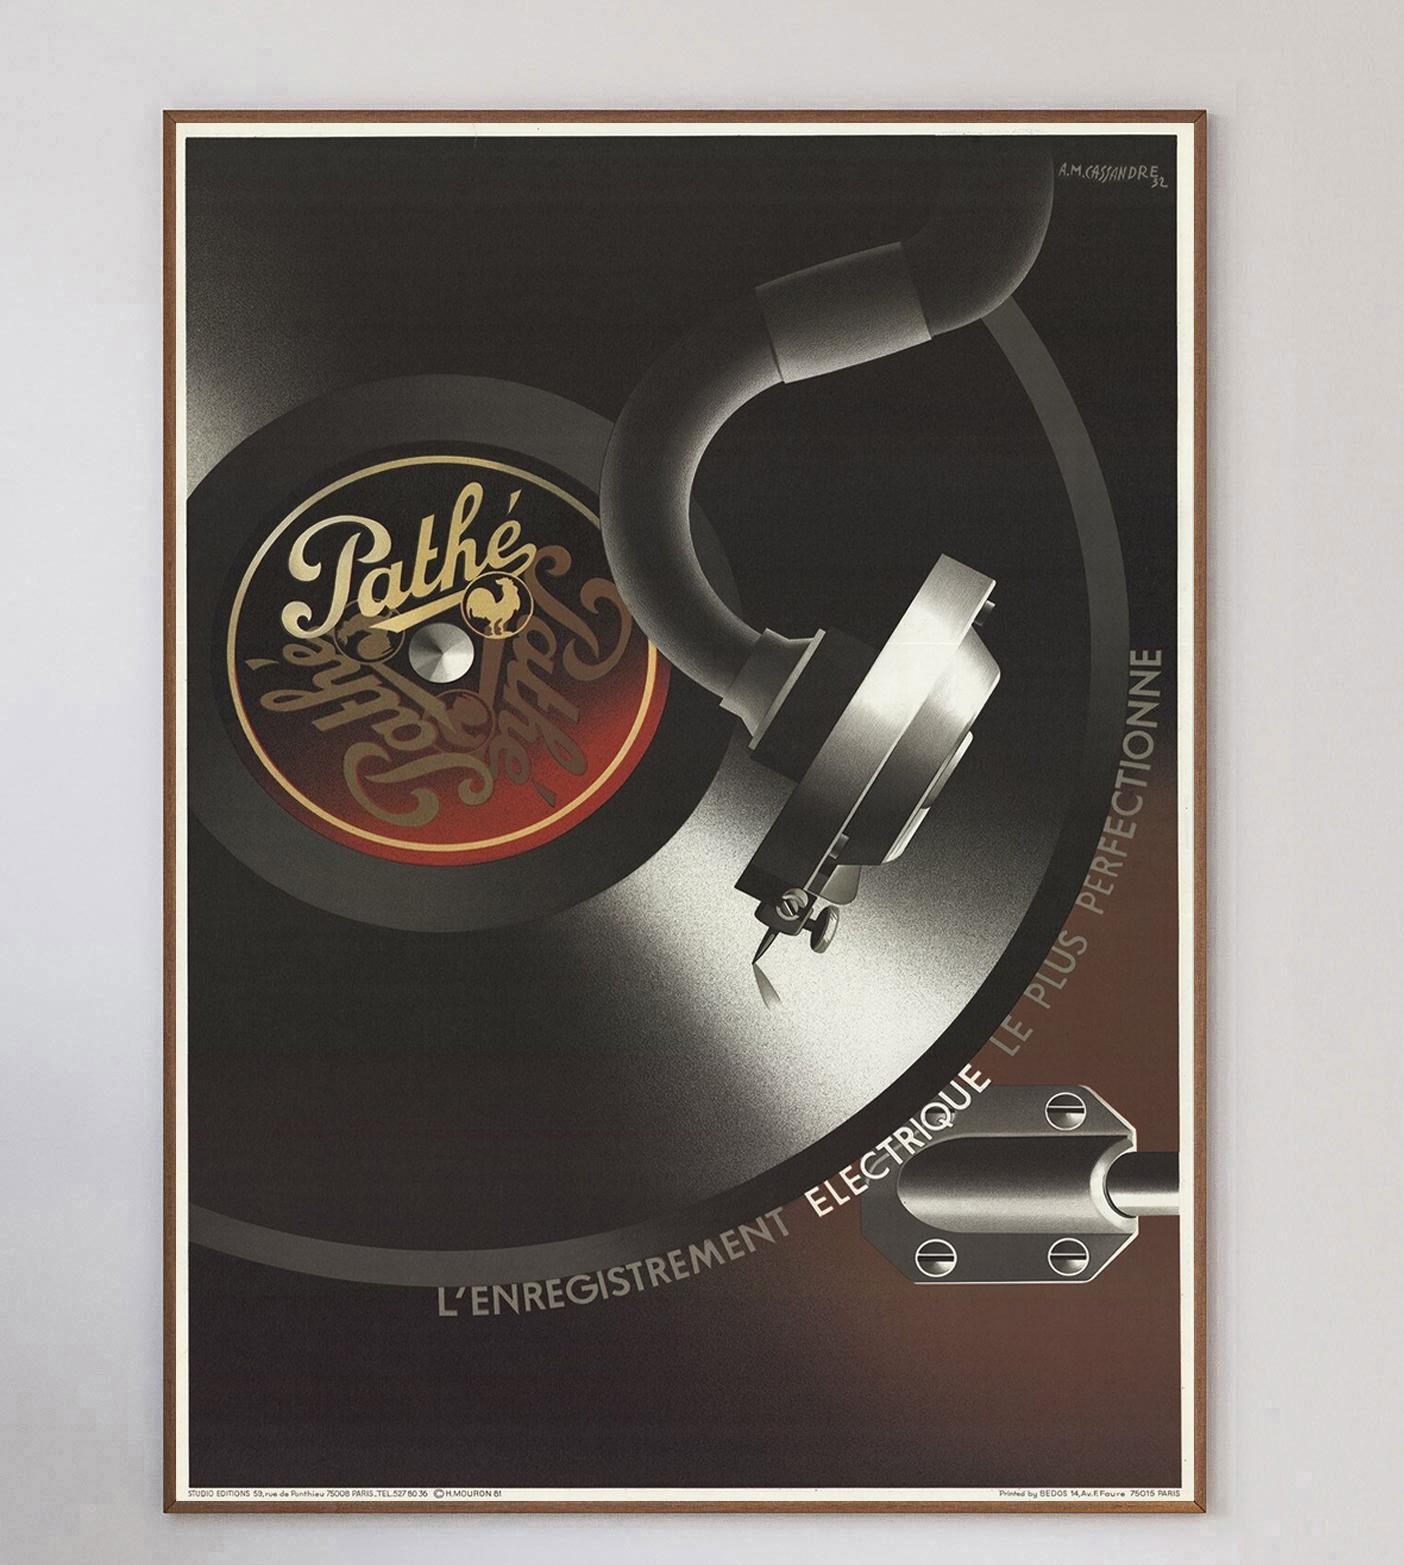 Superbe affiche publicitaire pour les tourne-disques Pathe, conçue à l'origine en 1932 par l'emblématique affichiste A.M. Cassandre. L'œuvre d'art représente un disque vinyle tournant sur le lecteur dans un magnifique style art déco.

Cette